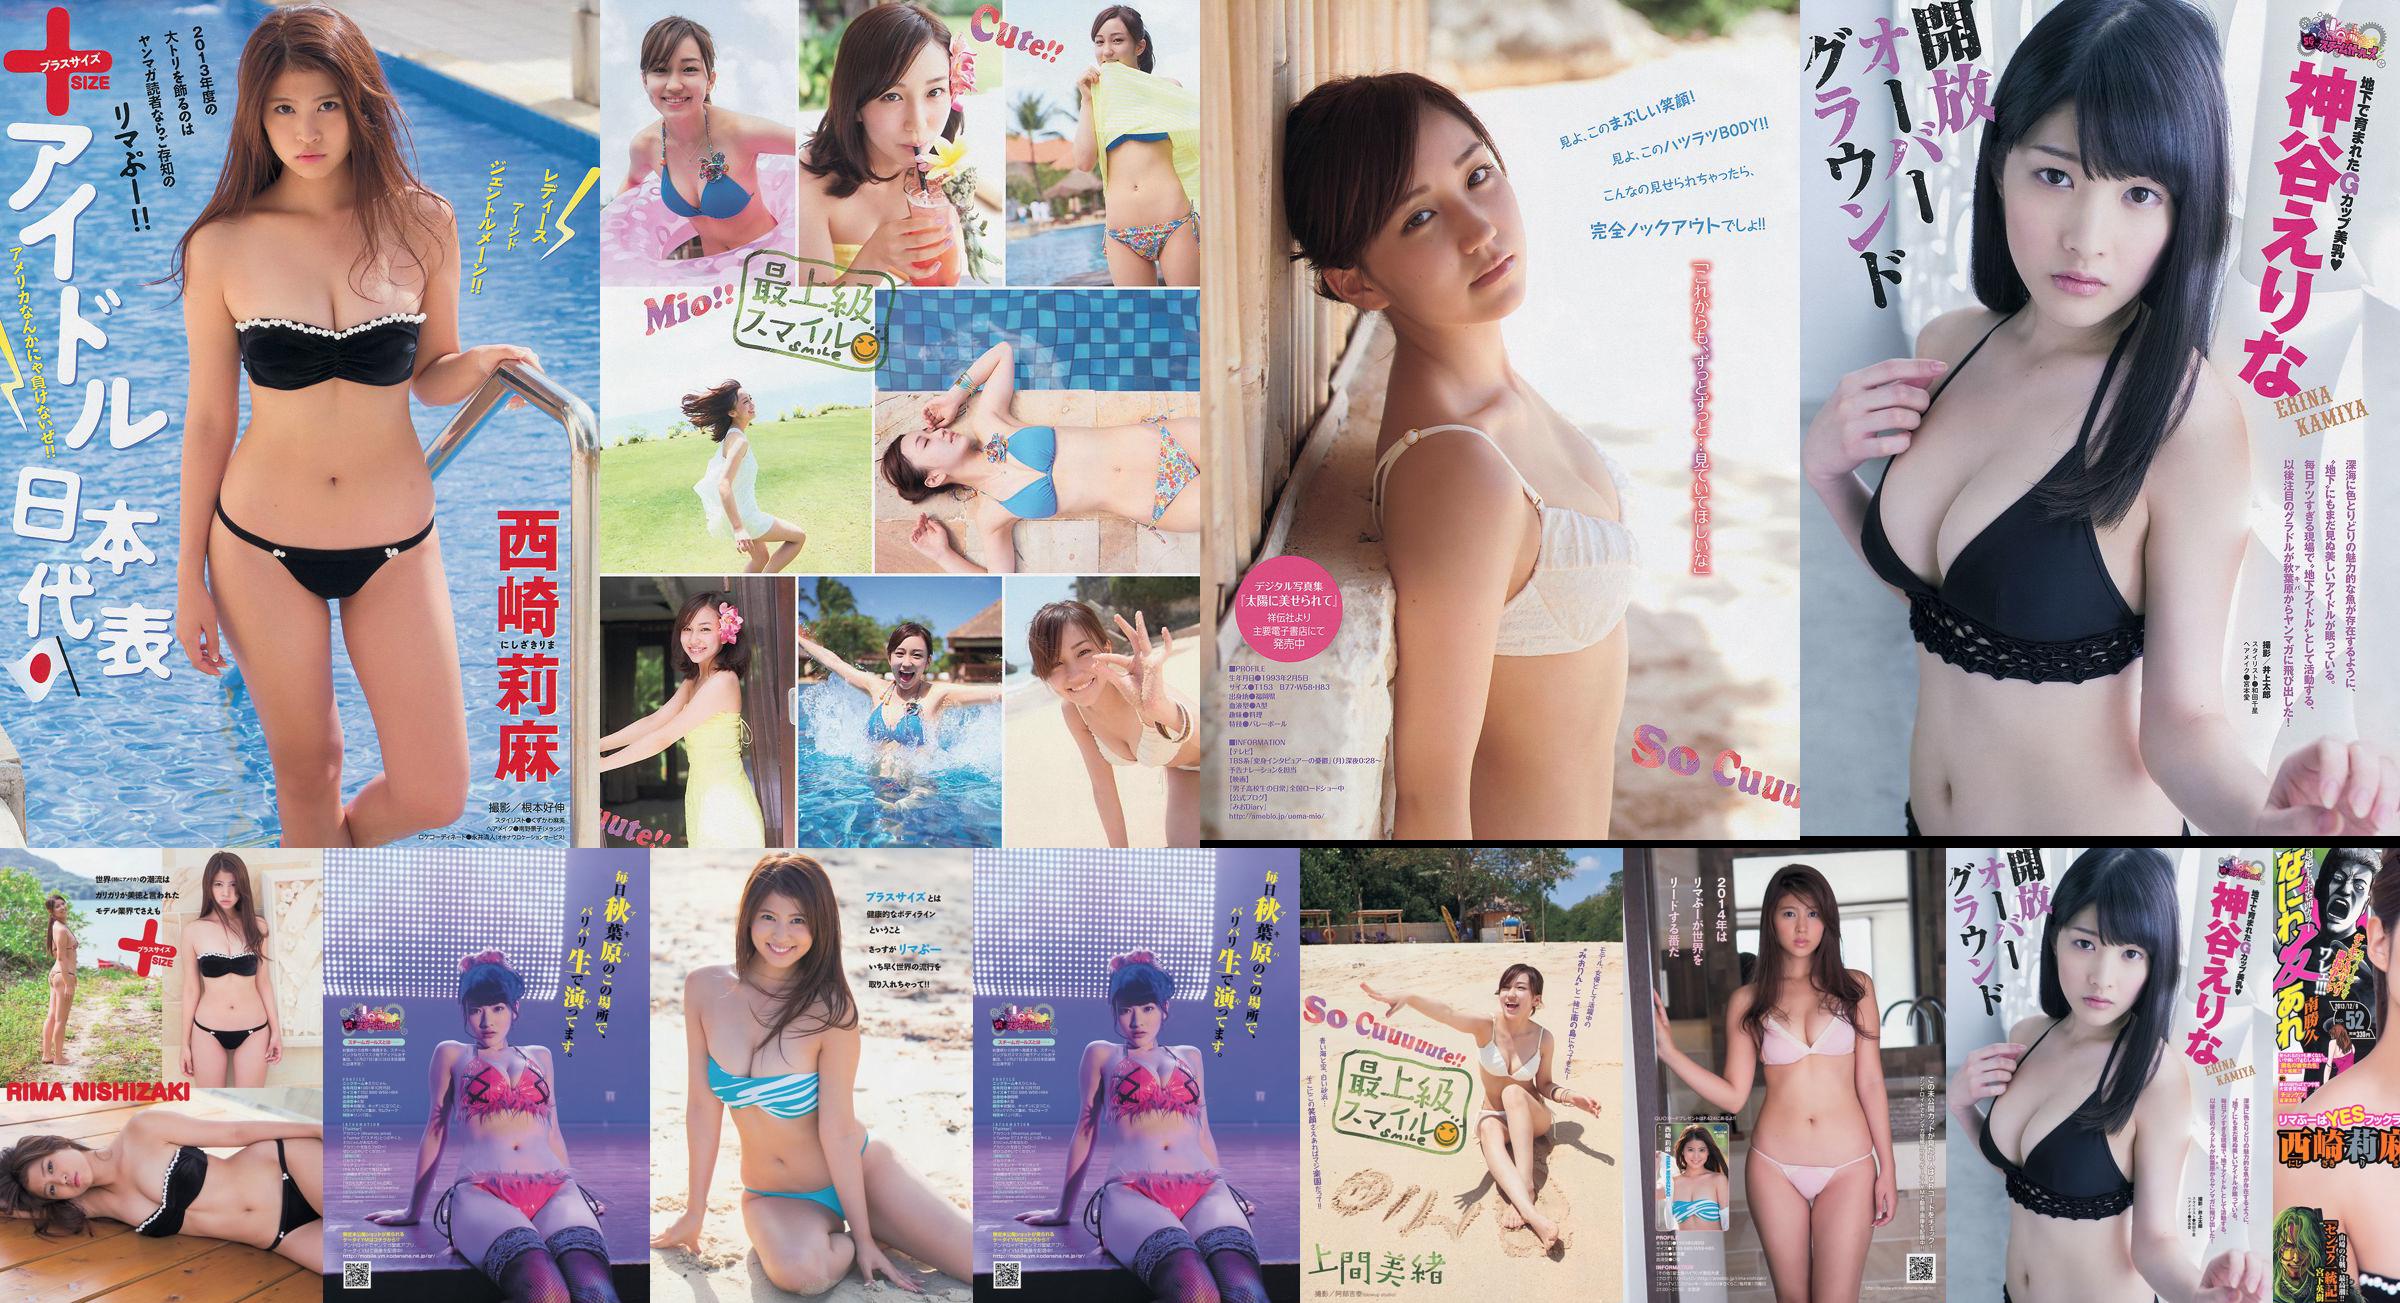 [Young Magazine] Rima Nishizaki Mio Uema Erina Kamiya 2013 No.52 Foto Moshi No.d11f3e Pagina 3